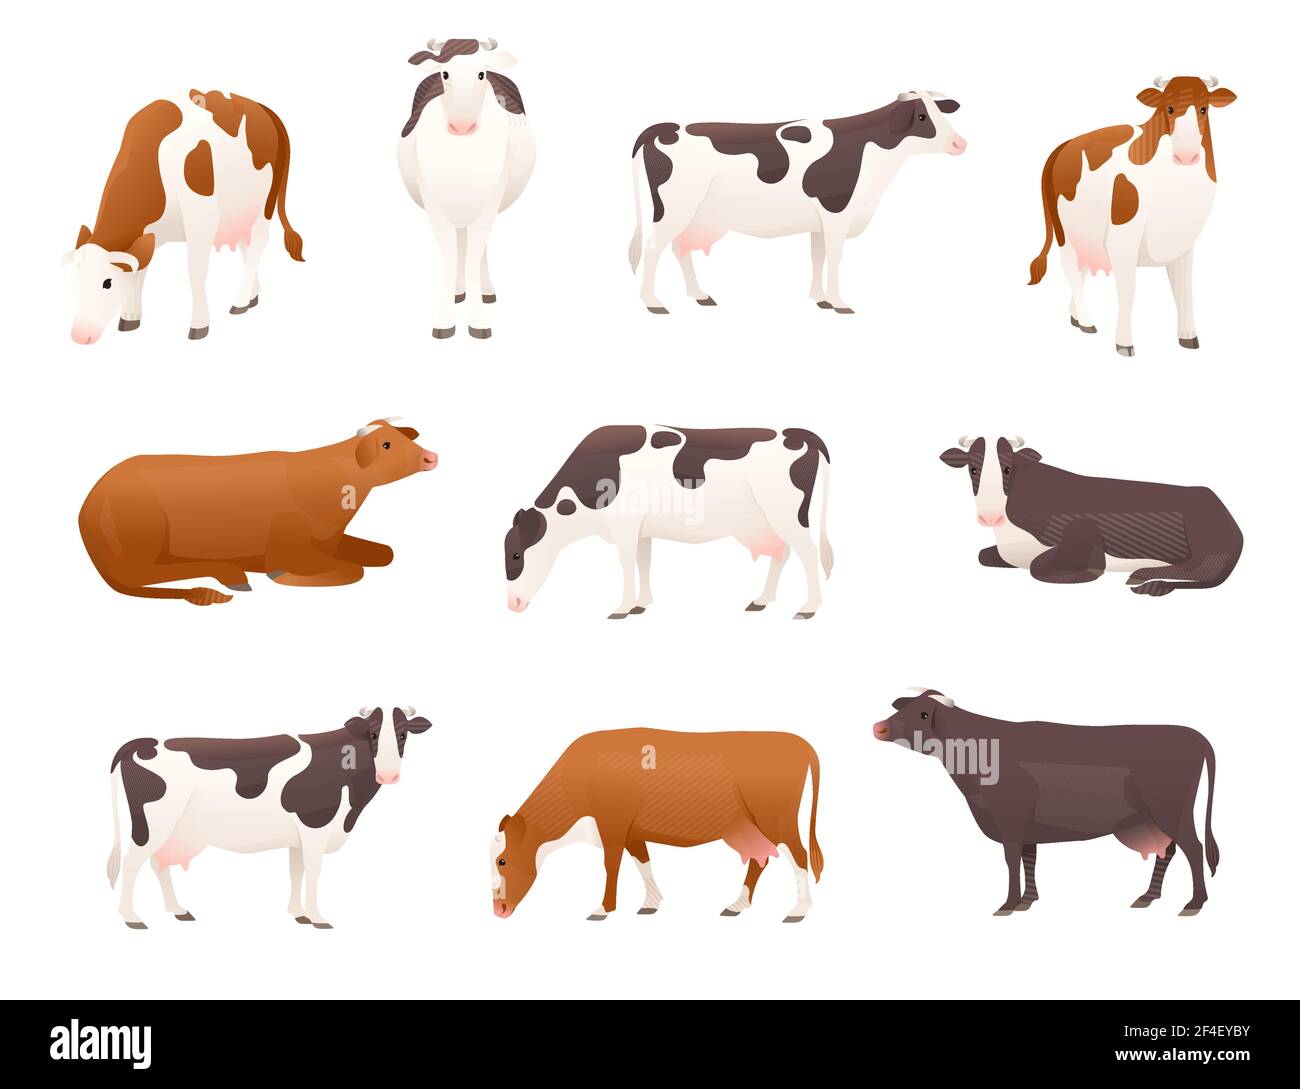 Ensemble de vaches laitières simmental et ayrshire vache tachetée animal mammifère domestique dessin animé illustration vectorielle sur fond blanc. Illustration de Vecteur